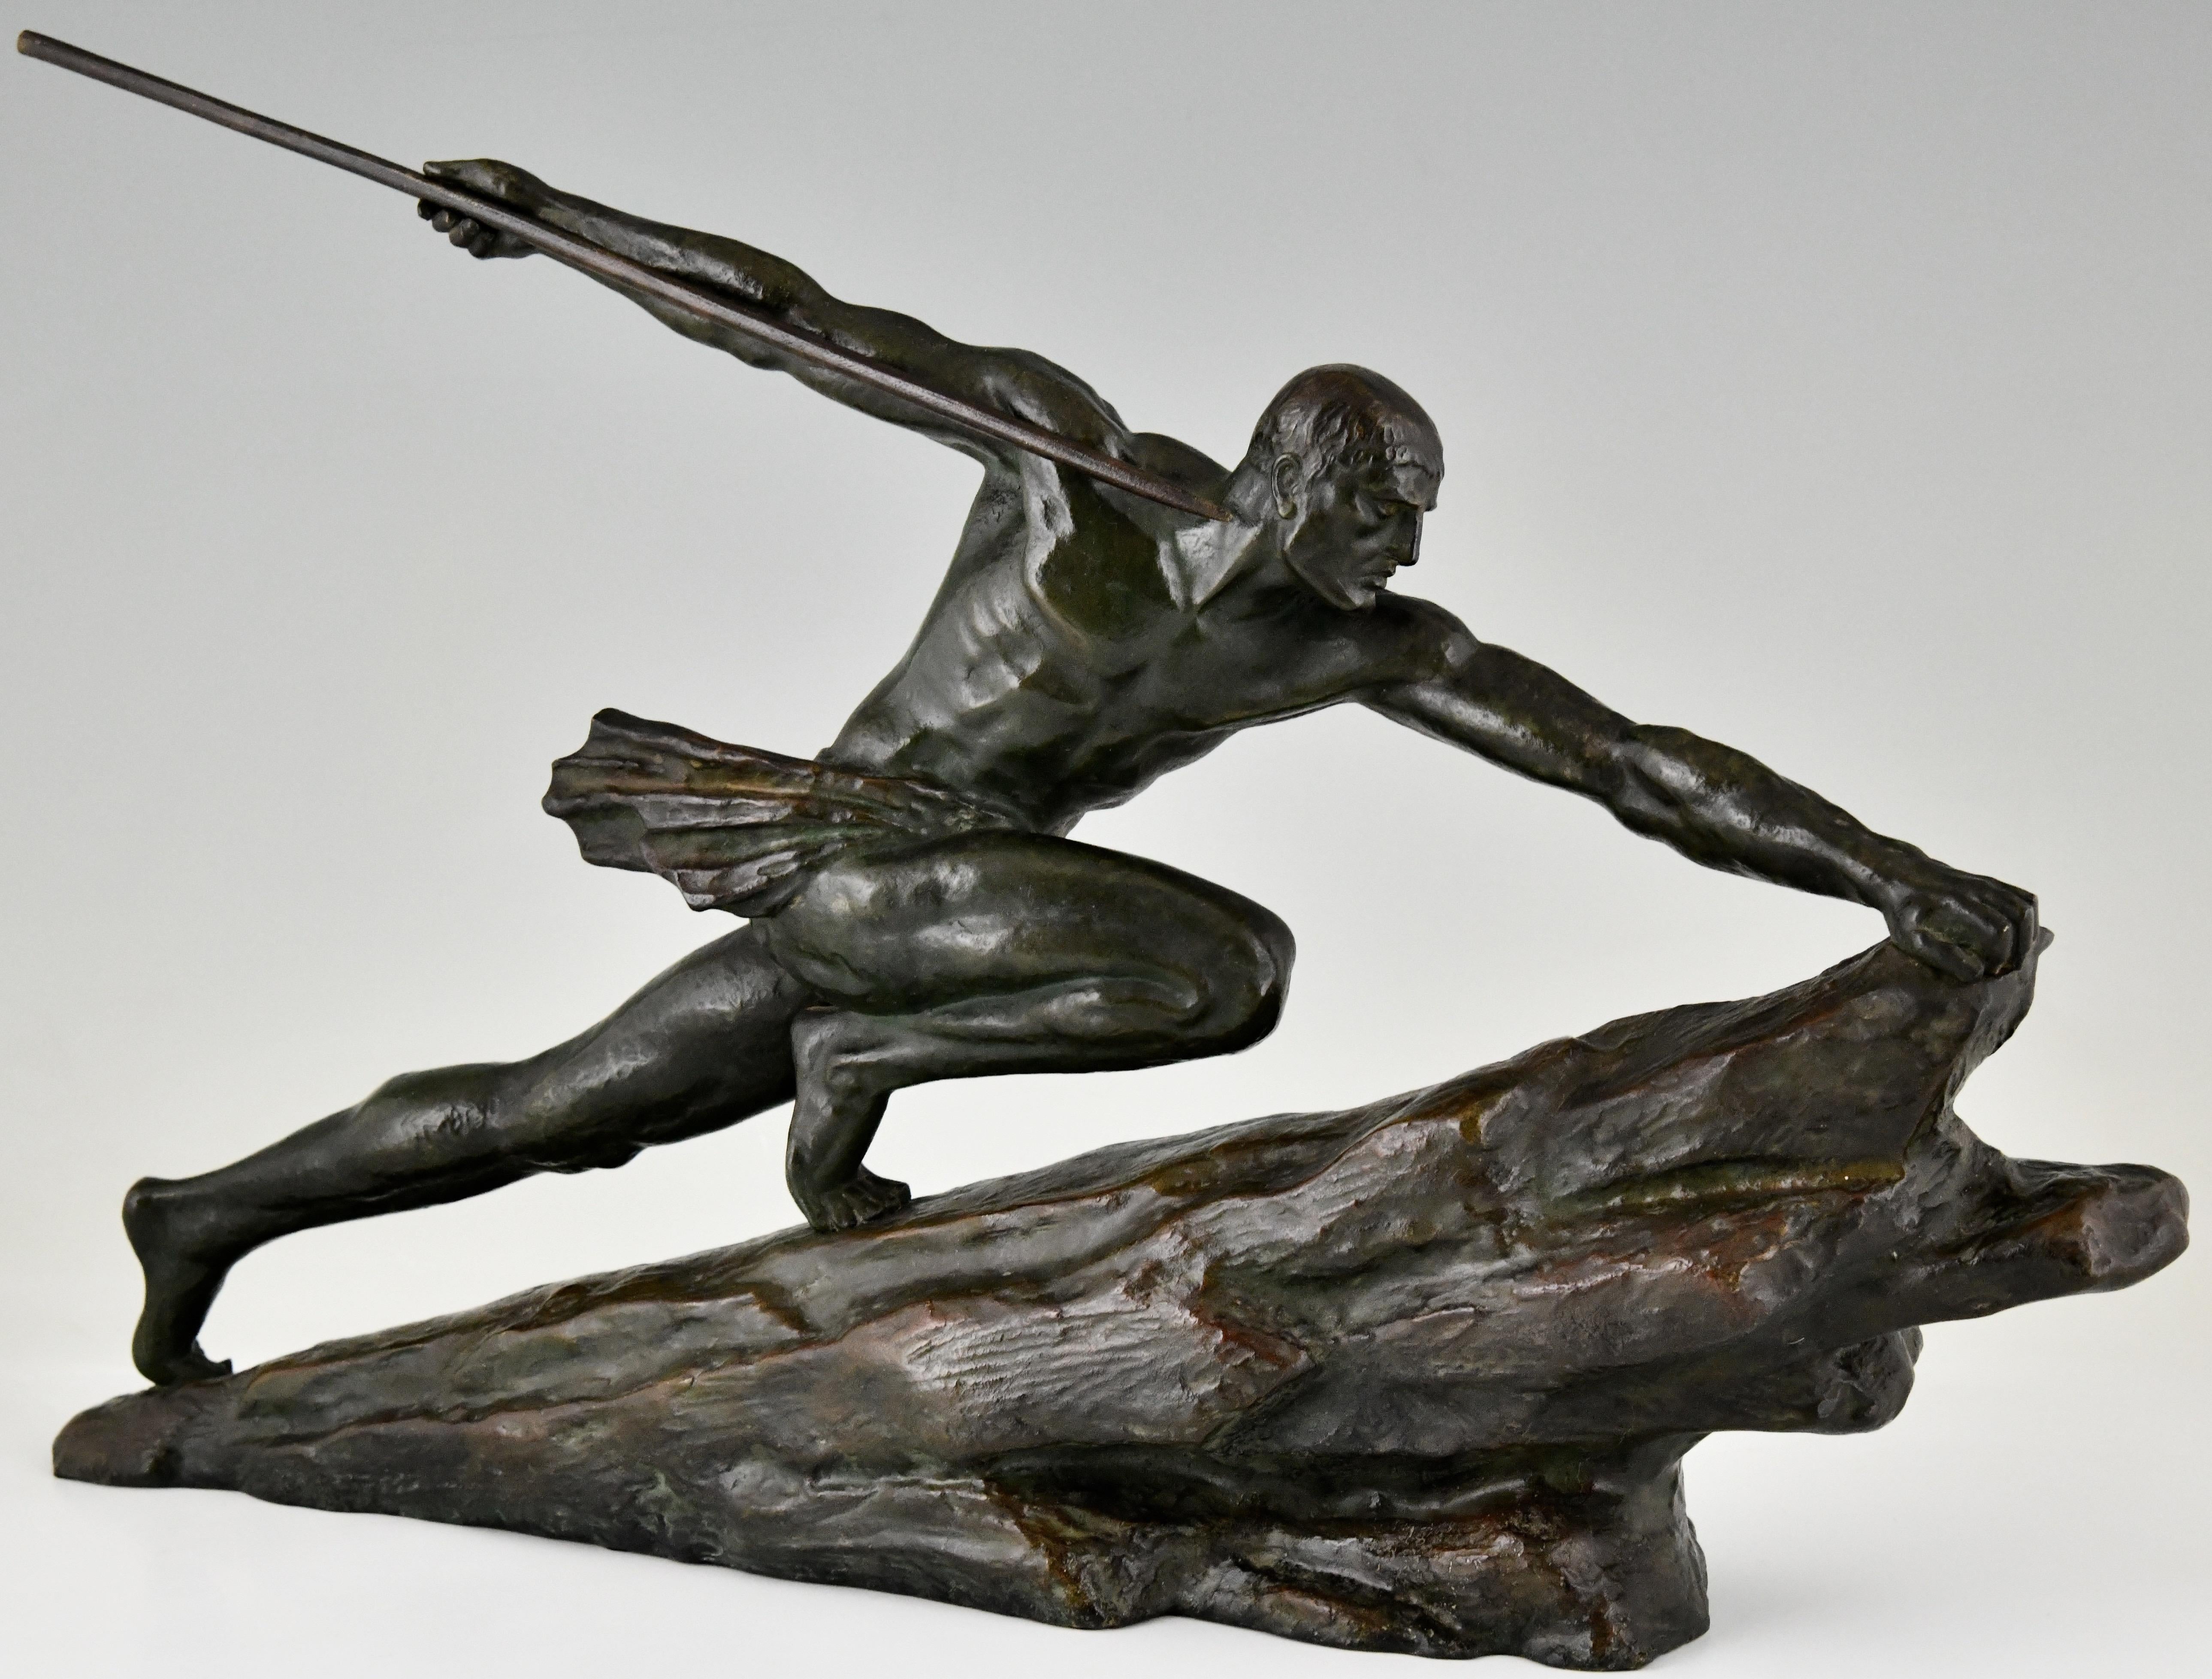 Art Deco Bronze-Skulptur Athlet mit Speer signiert von Pierre Le Faguays. 
Die Skulptur hat eine satte grüne Patina mit braunen Schattierungen.
Frankreich 1927.
Diese Bronze ist auf Seite 425 des Buches abgebildet: Bronzen, Bildhauer und Stifter von